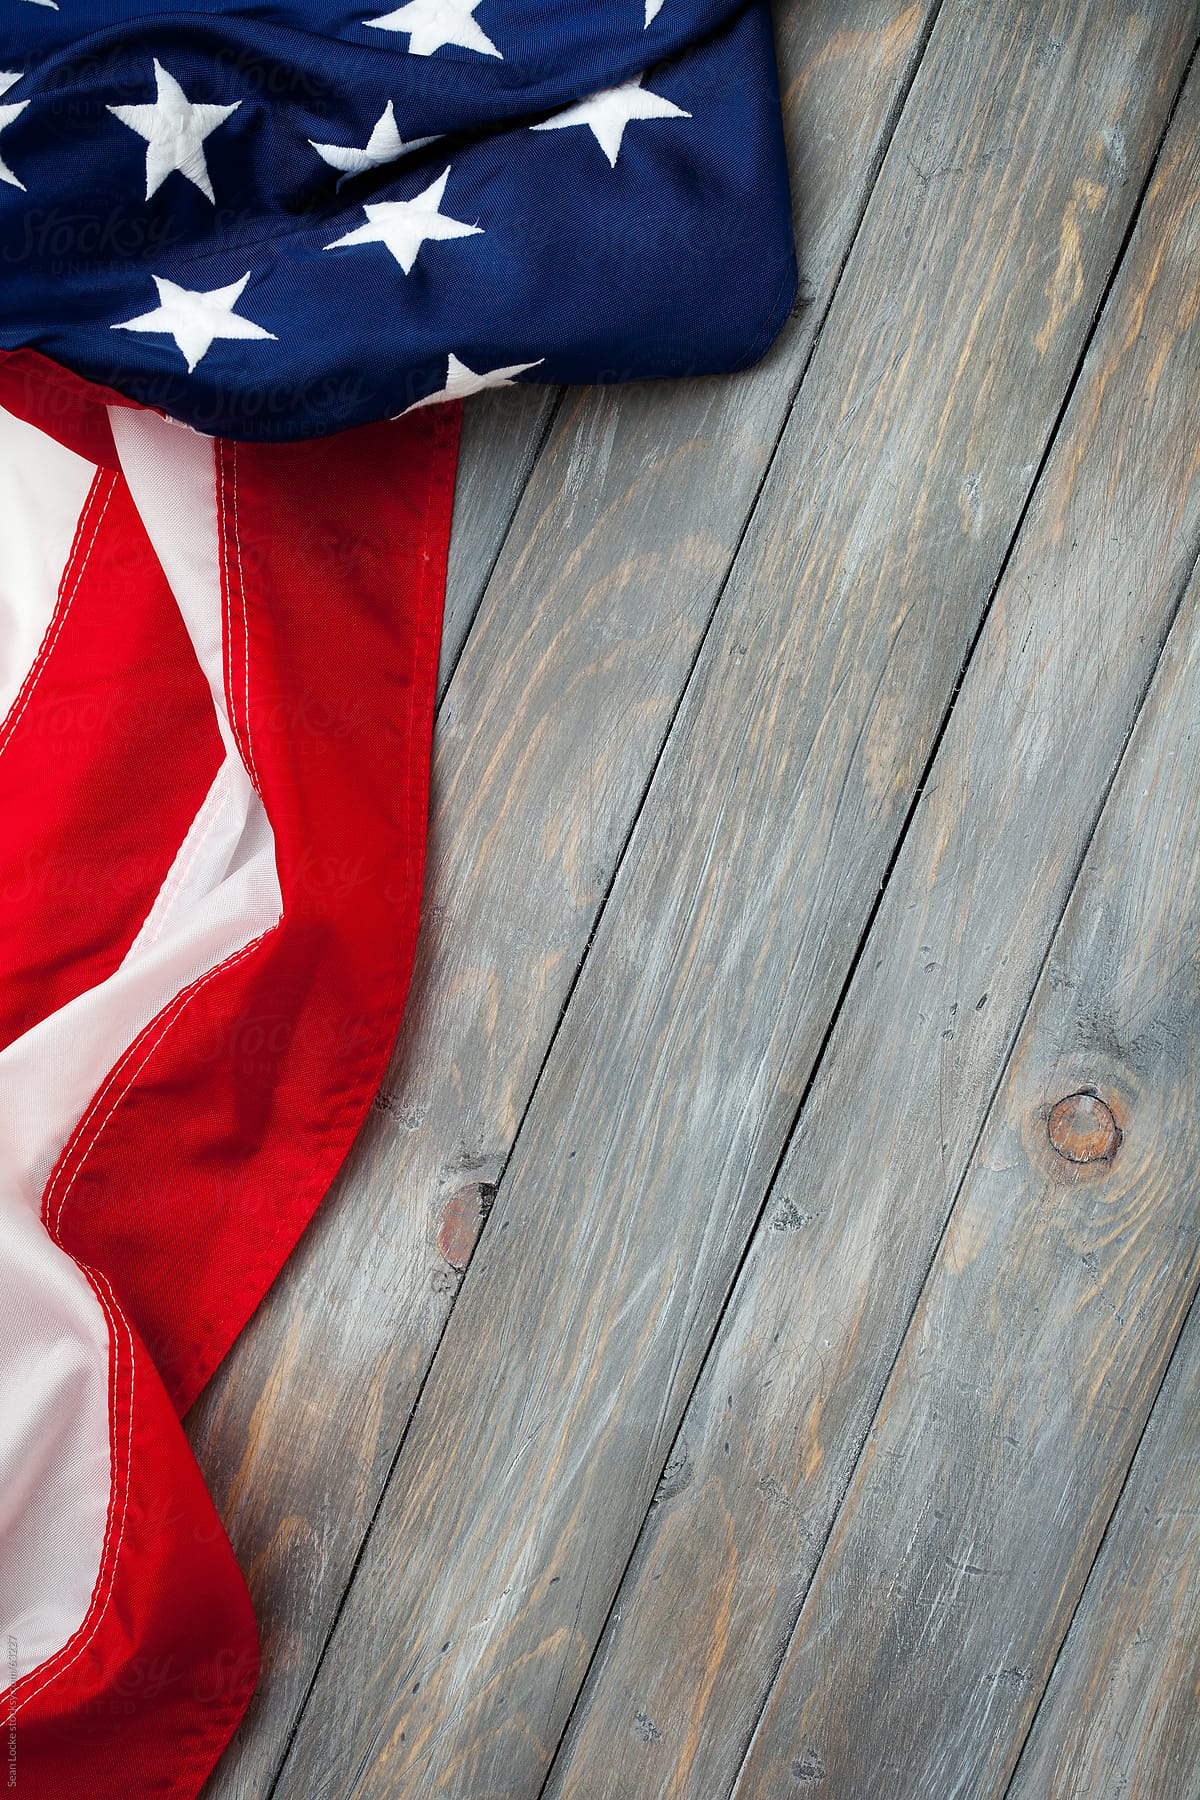 Patriotic: American Flag Lying on Wood